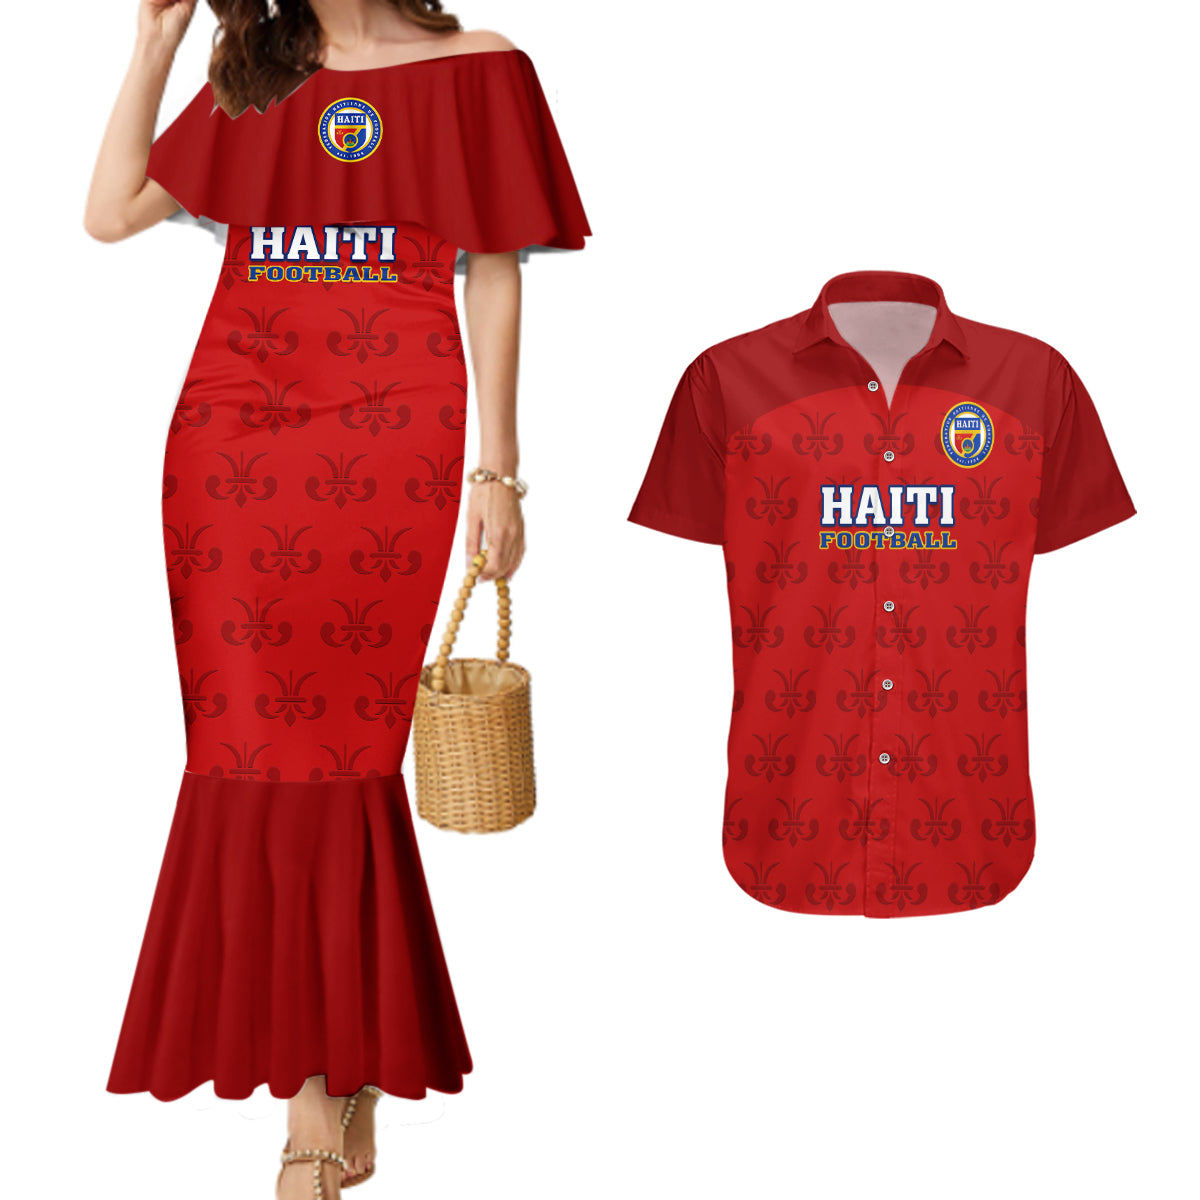 haiti-football-couples-matching-mermaid-dress-and-hawaiian-shirt-les-grenadieres-2023-world-cup-red-version